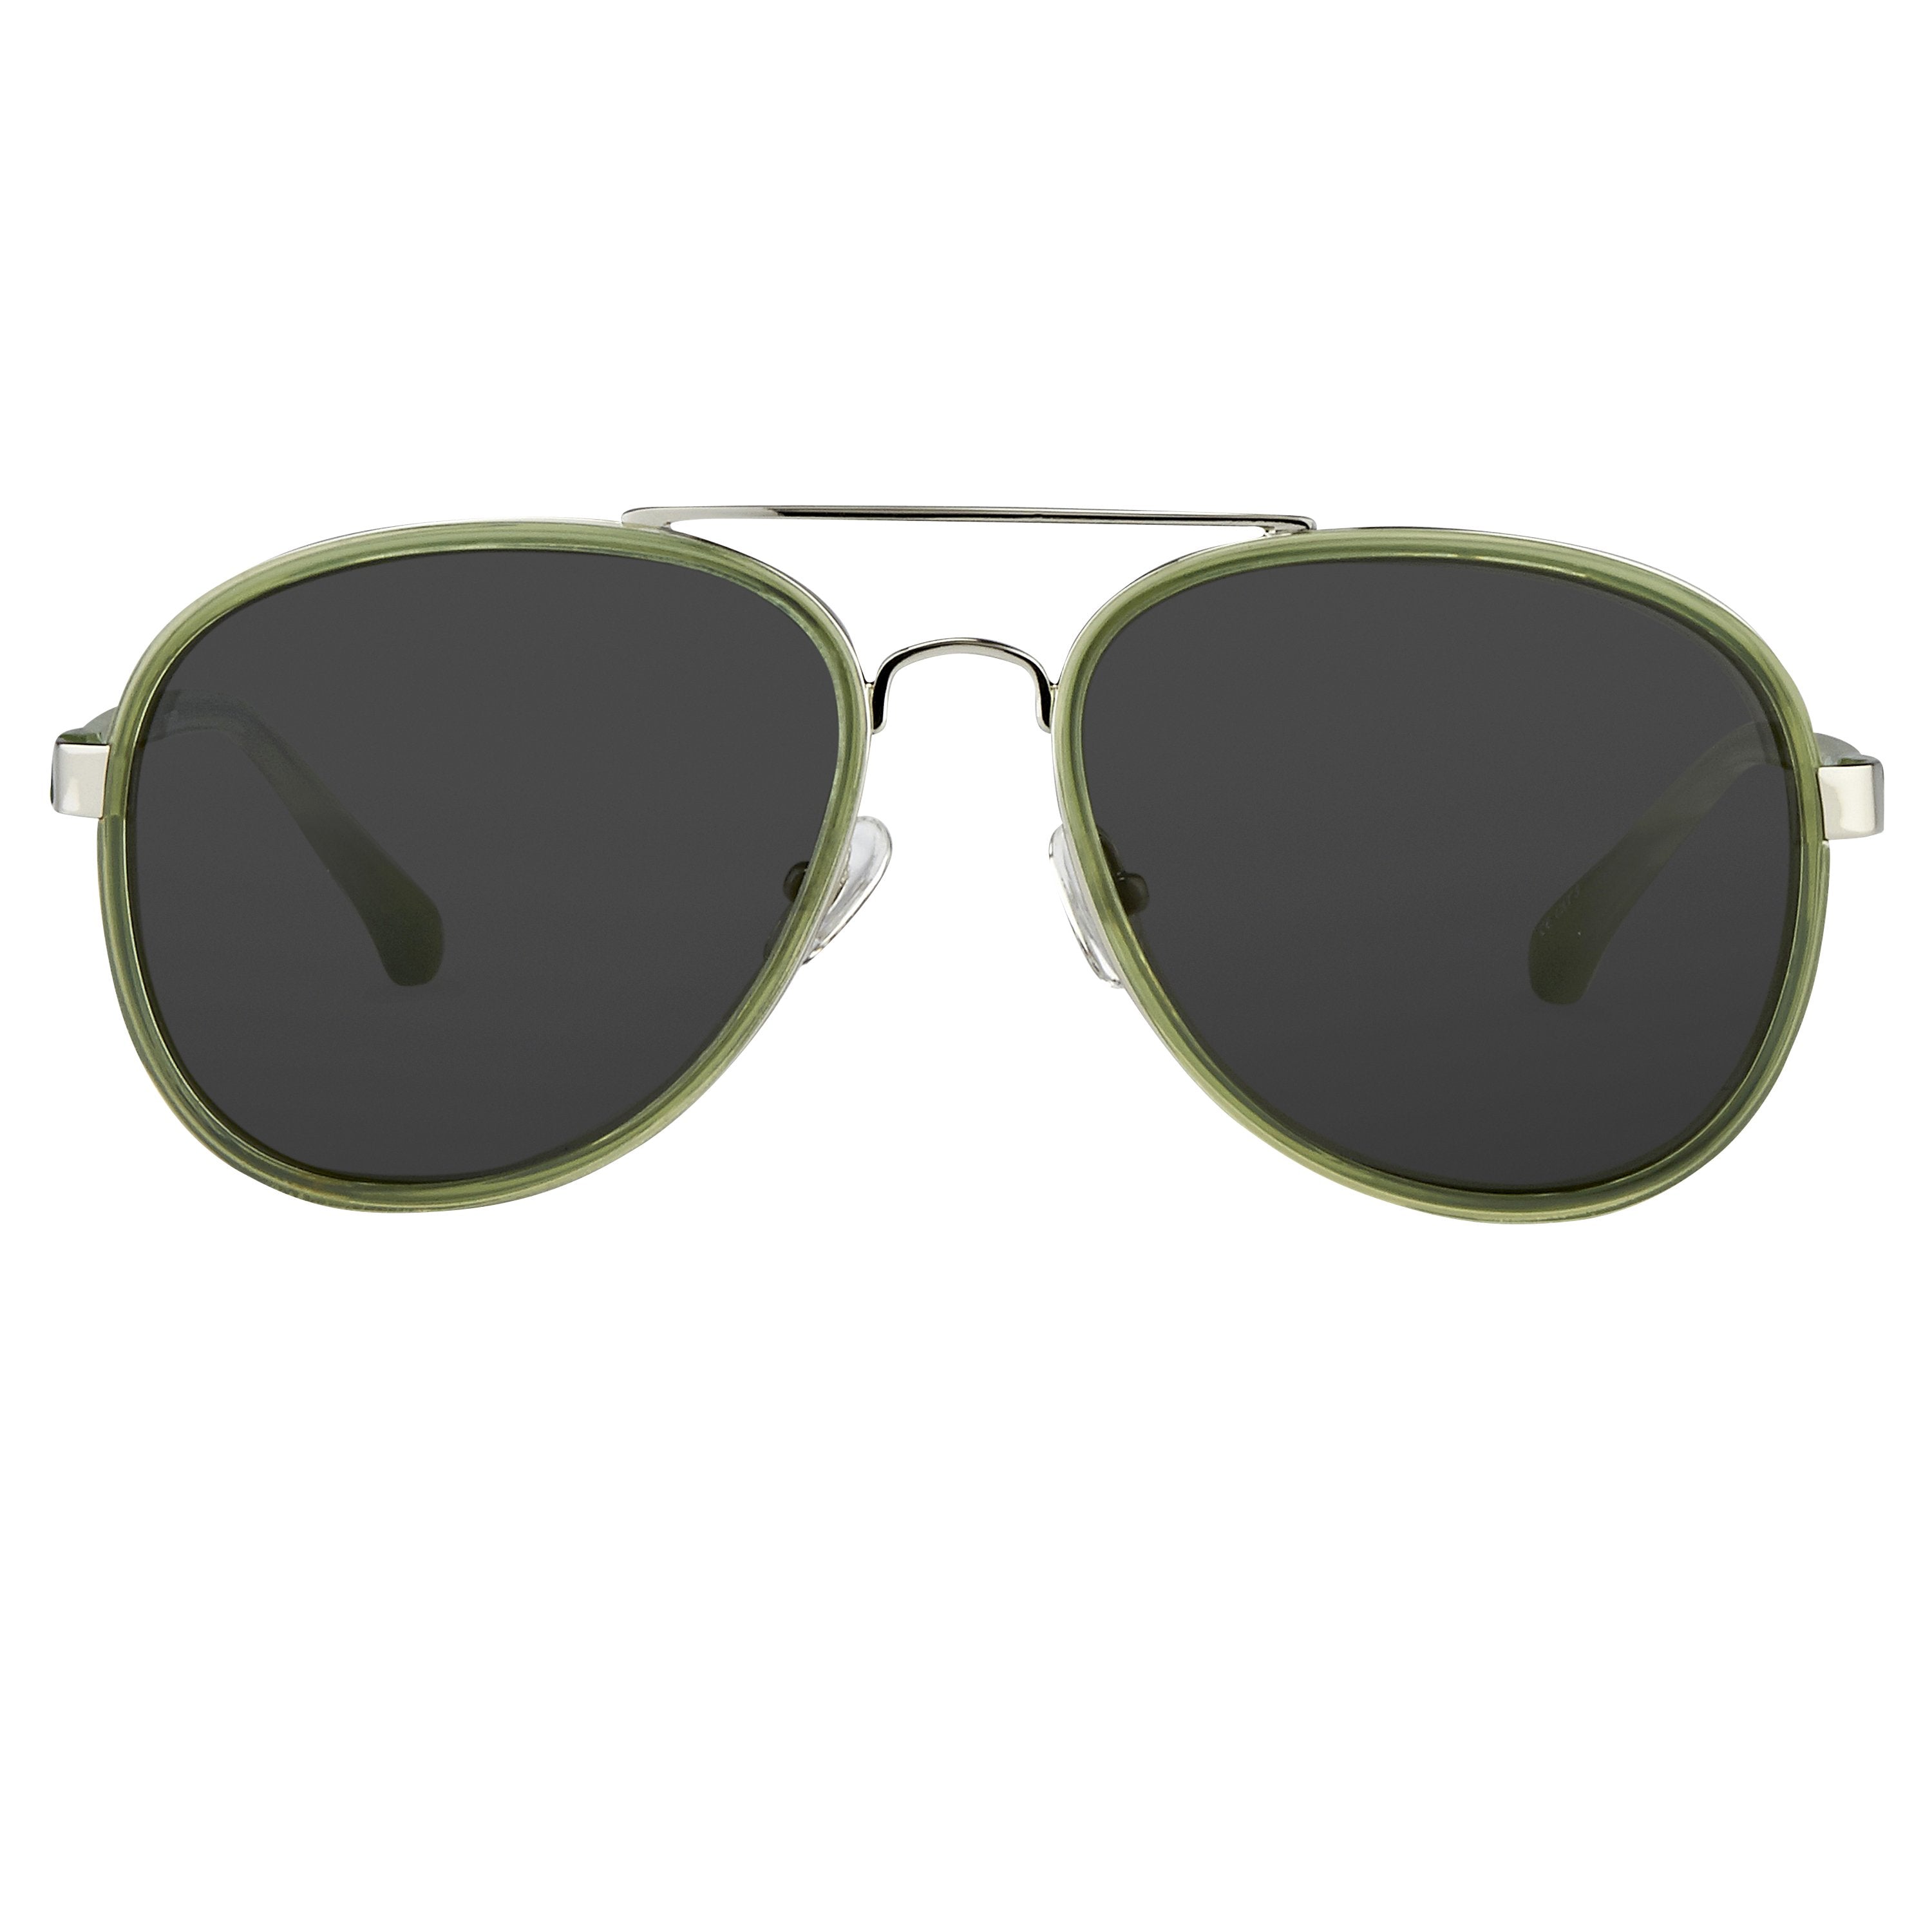 Color_DVN97C1SUN - Dries van Noten 97 C1 Aviator Sunglasses